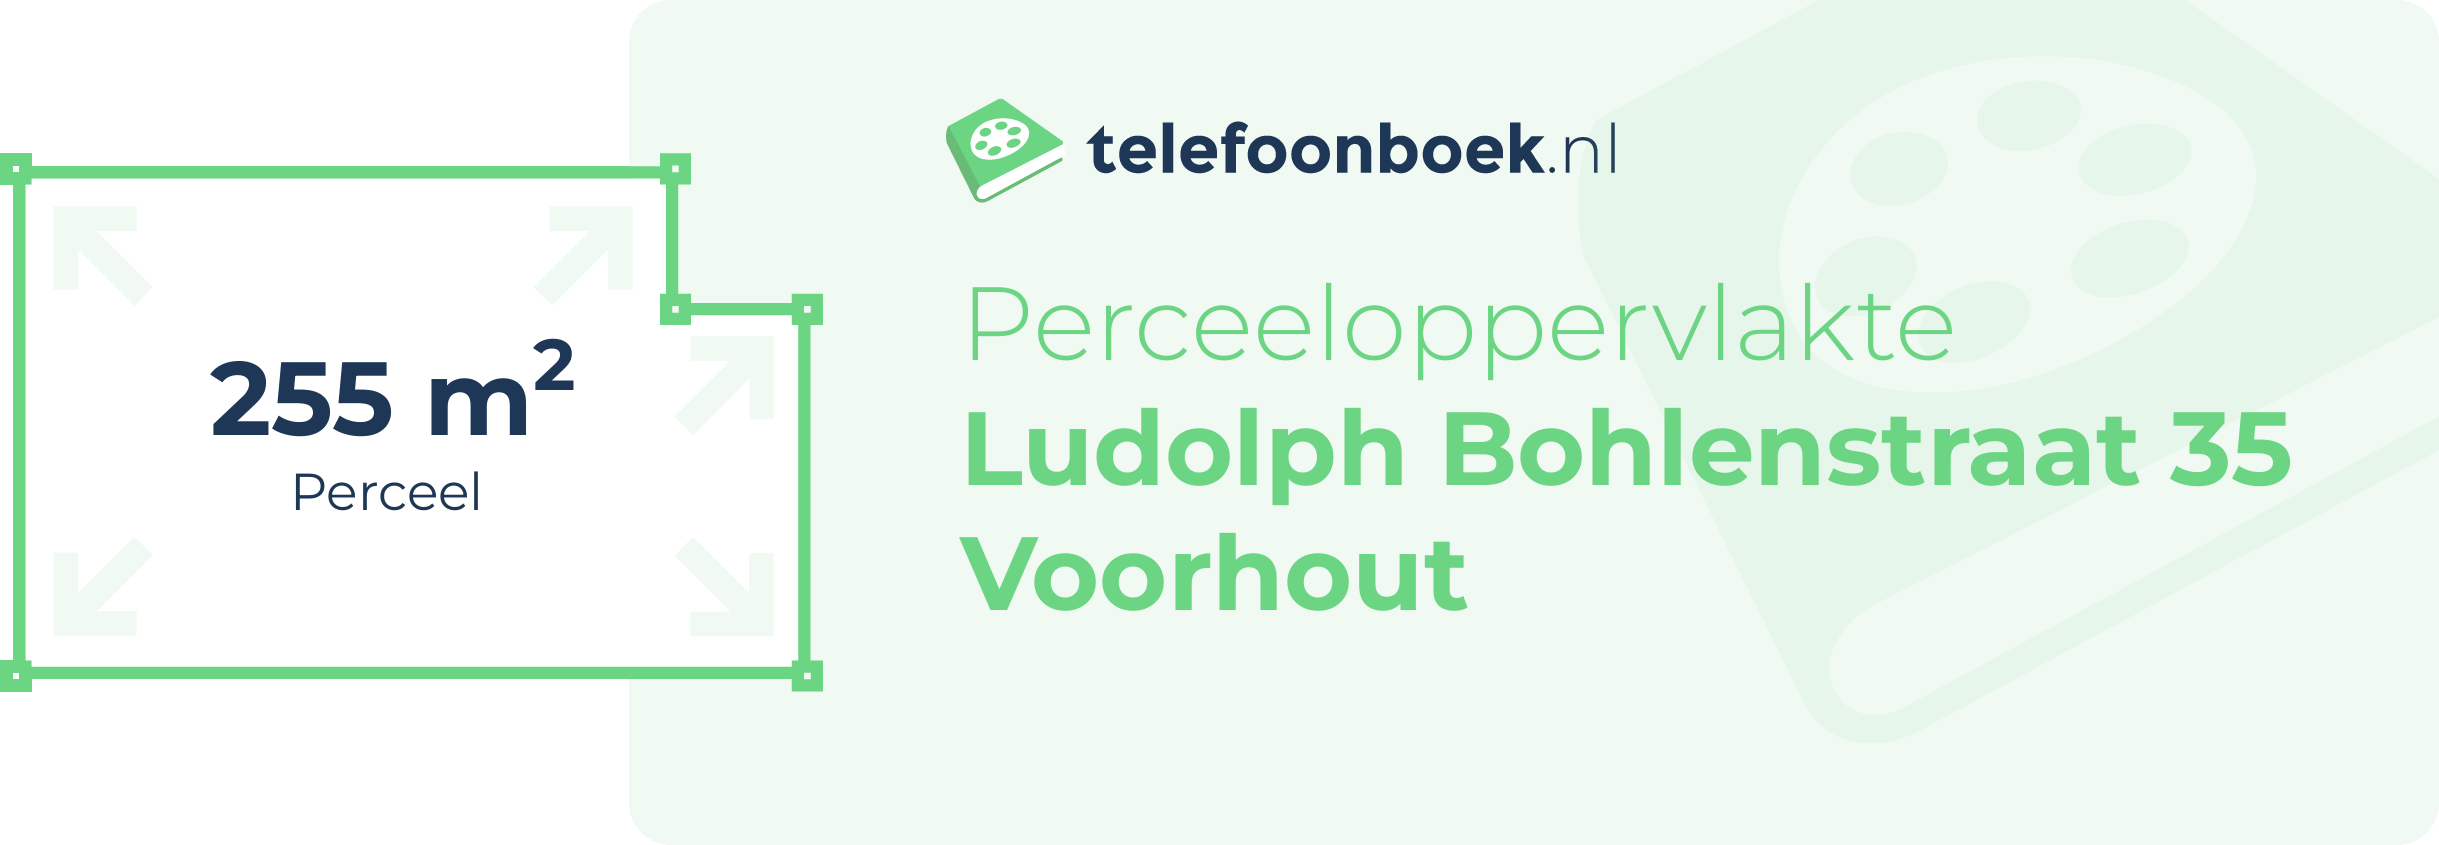 Perceeloppervlakte Ludolph Bohlenstraat 35 Voorhout